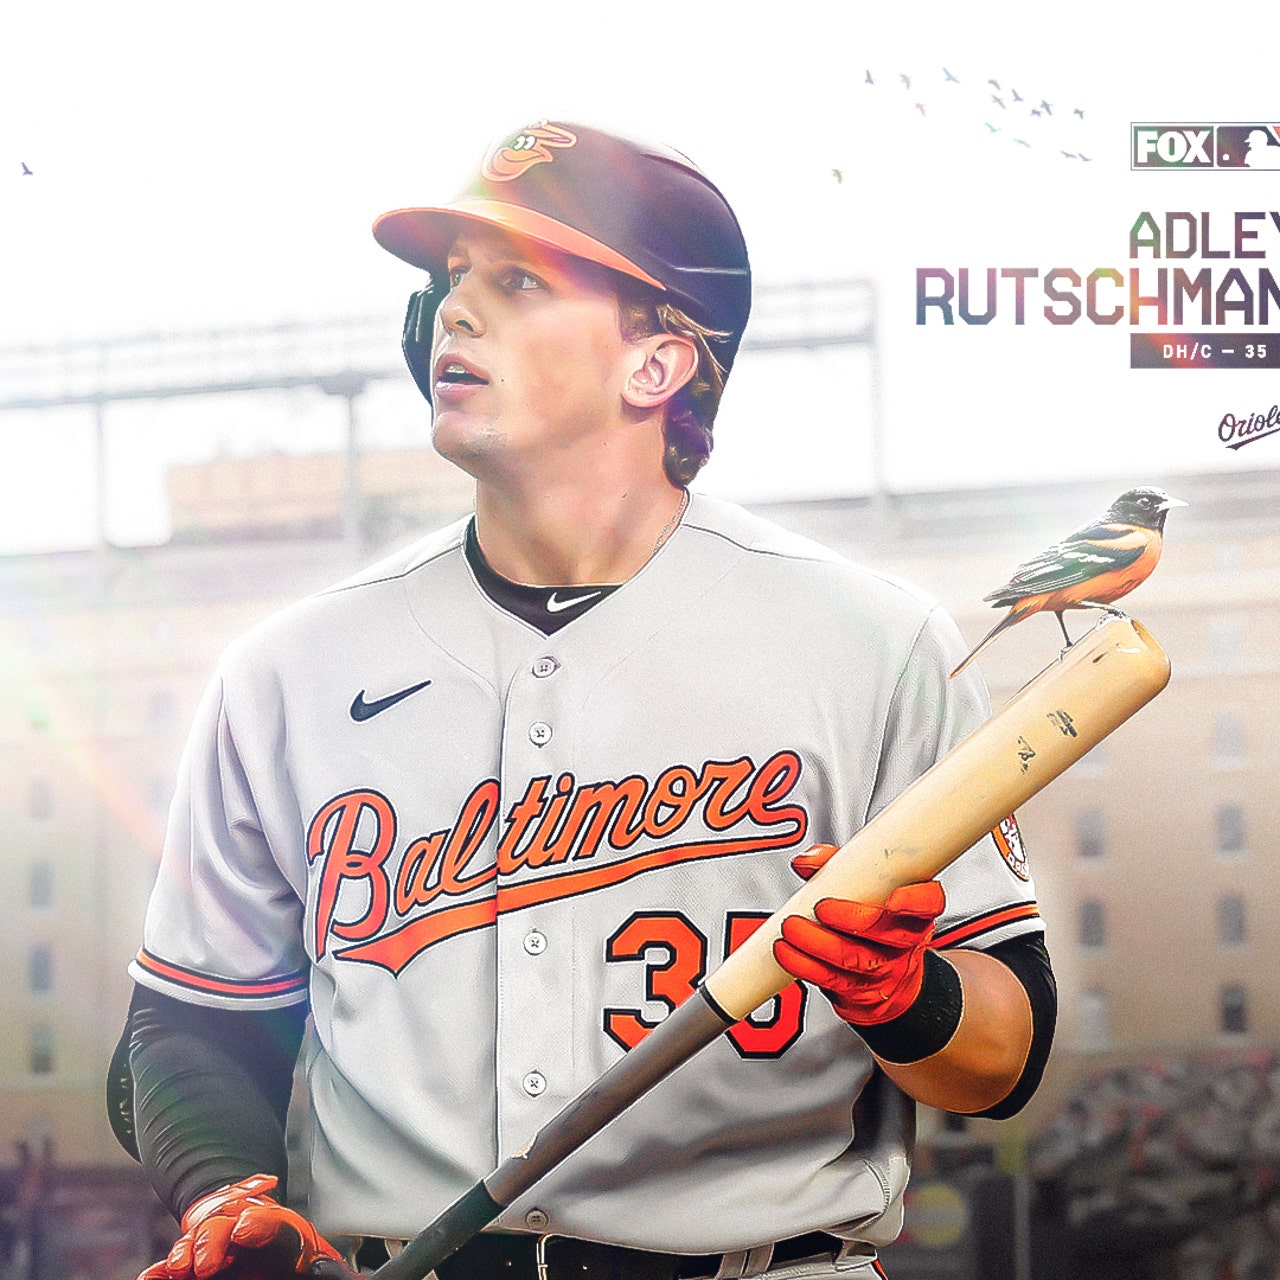 Orioles Catcher Adley Rutschman Ranked Top Prospect in Baseball by